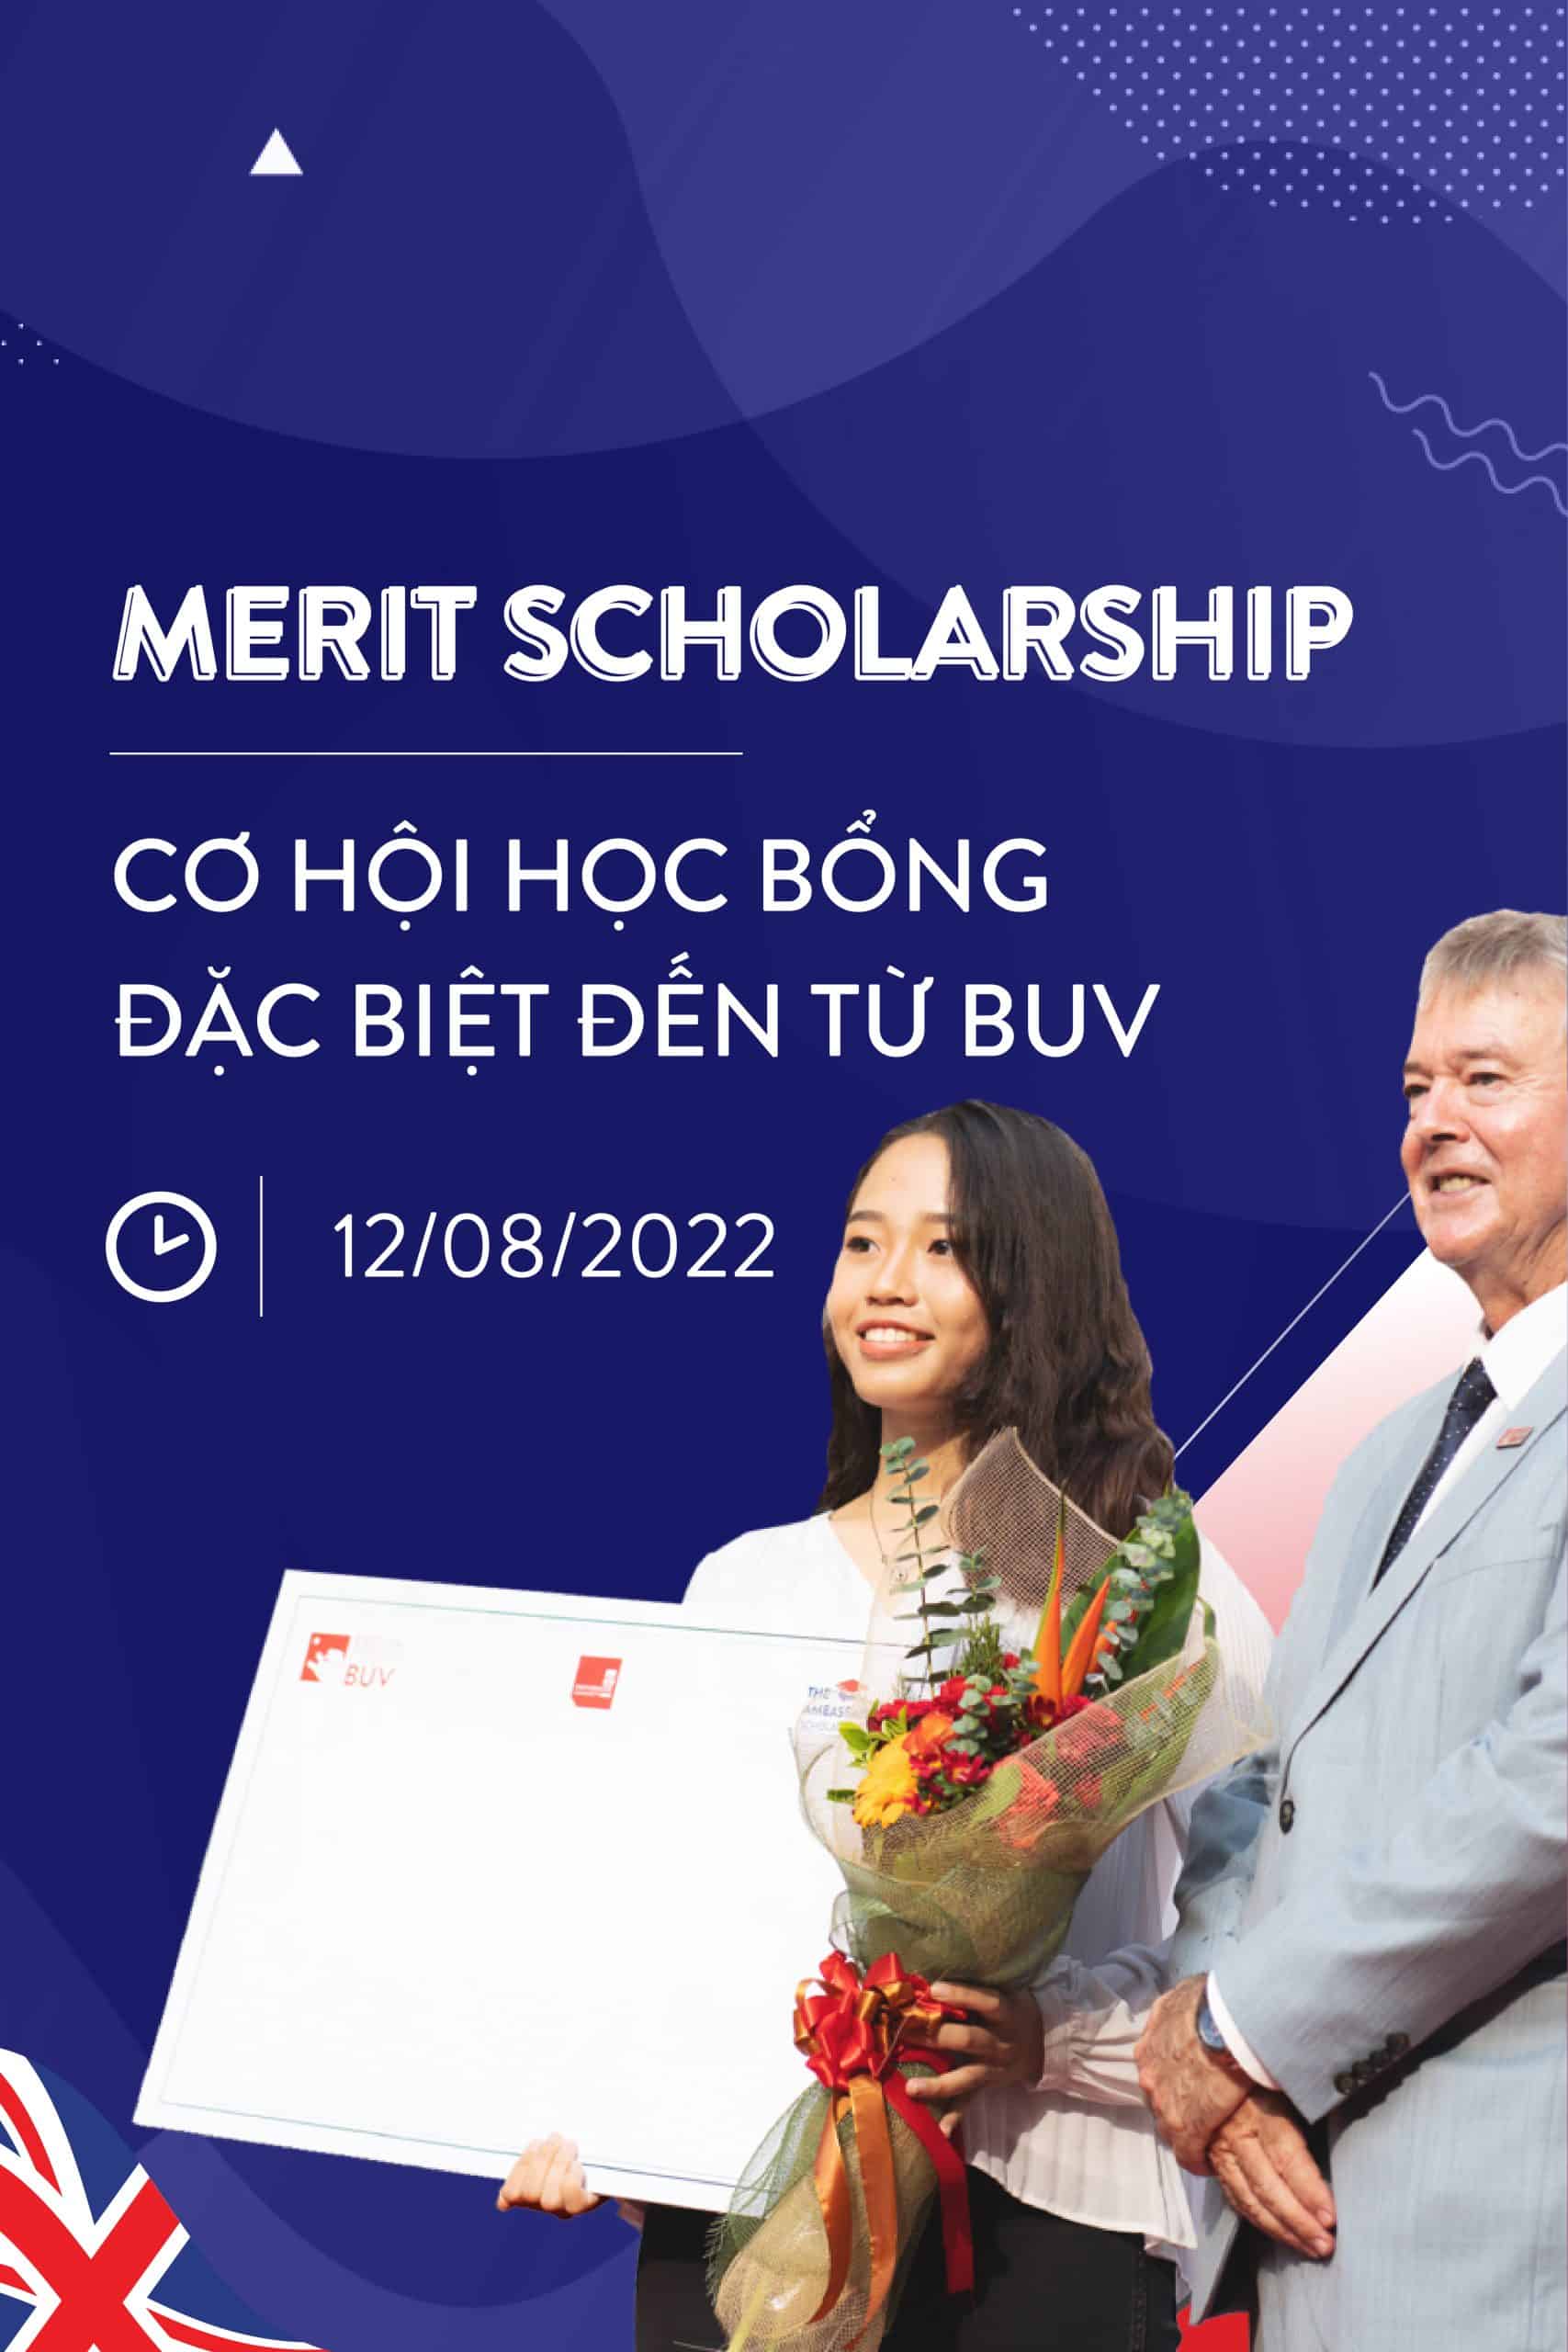 BUV chính thức mở đơn ứng tuyển Merit Scholarship – cơ hội Học bổng mới dành cho Học sinh Xuất sắc